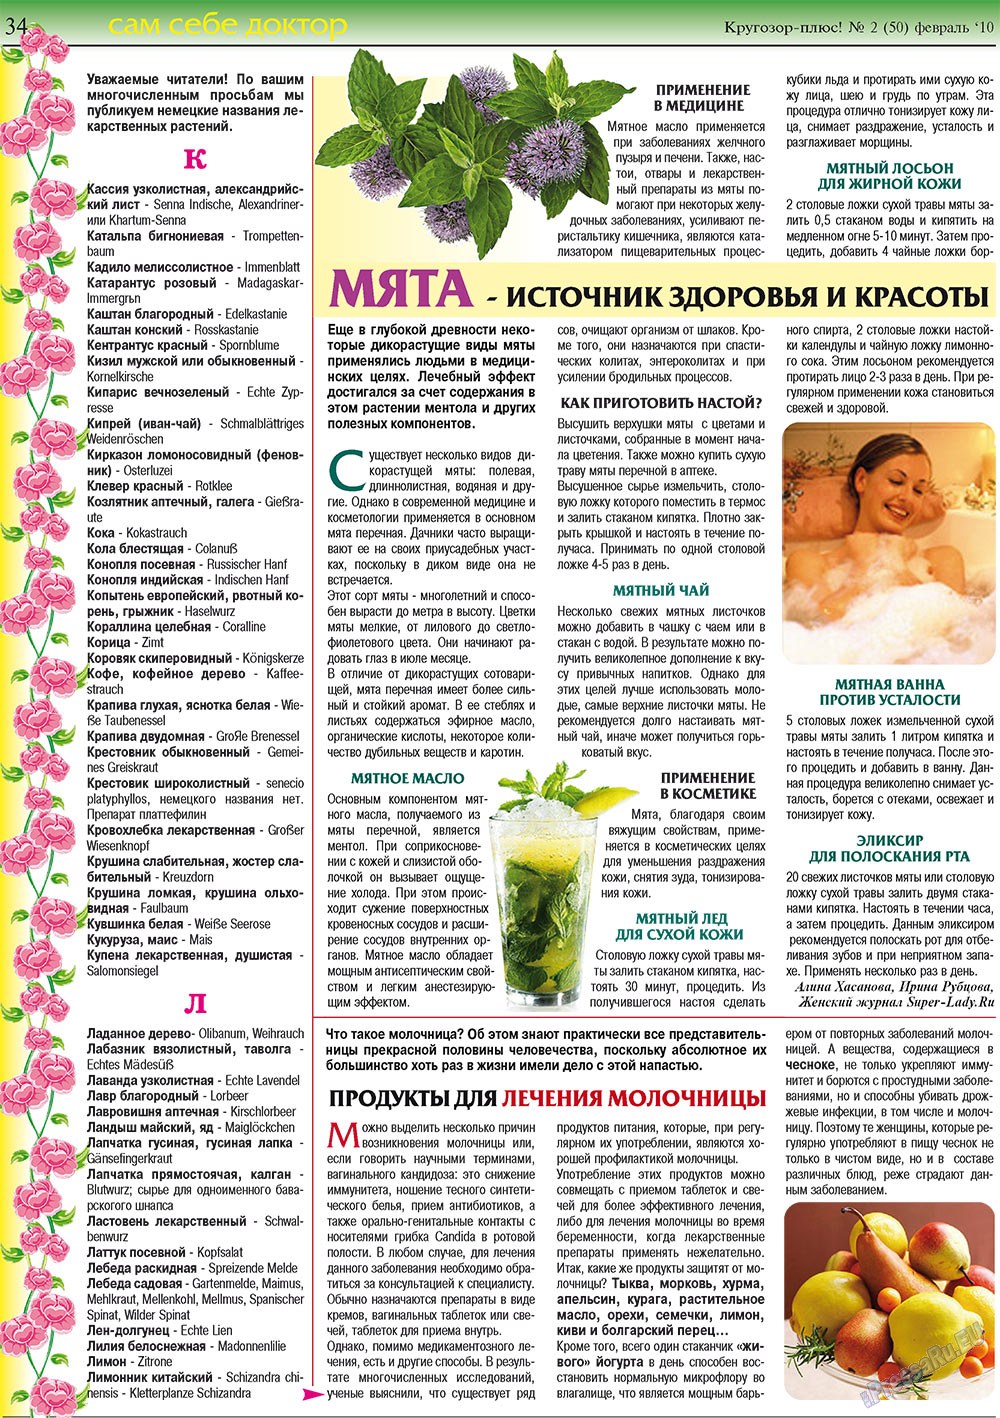 Кругозор плюс!, газета. 2010 №2 стр.34